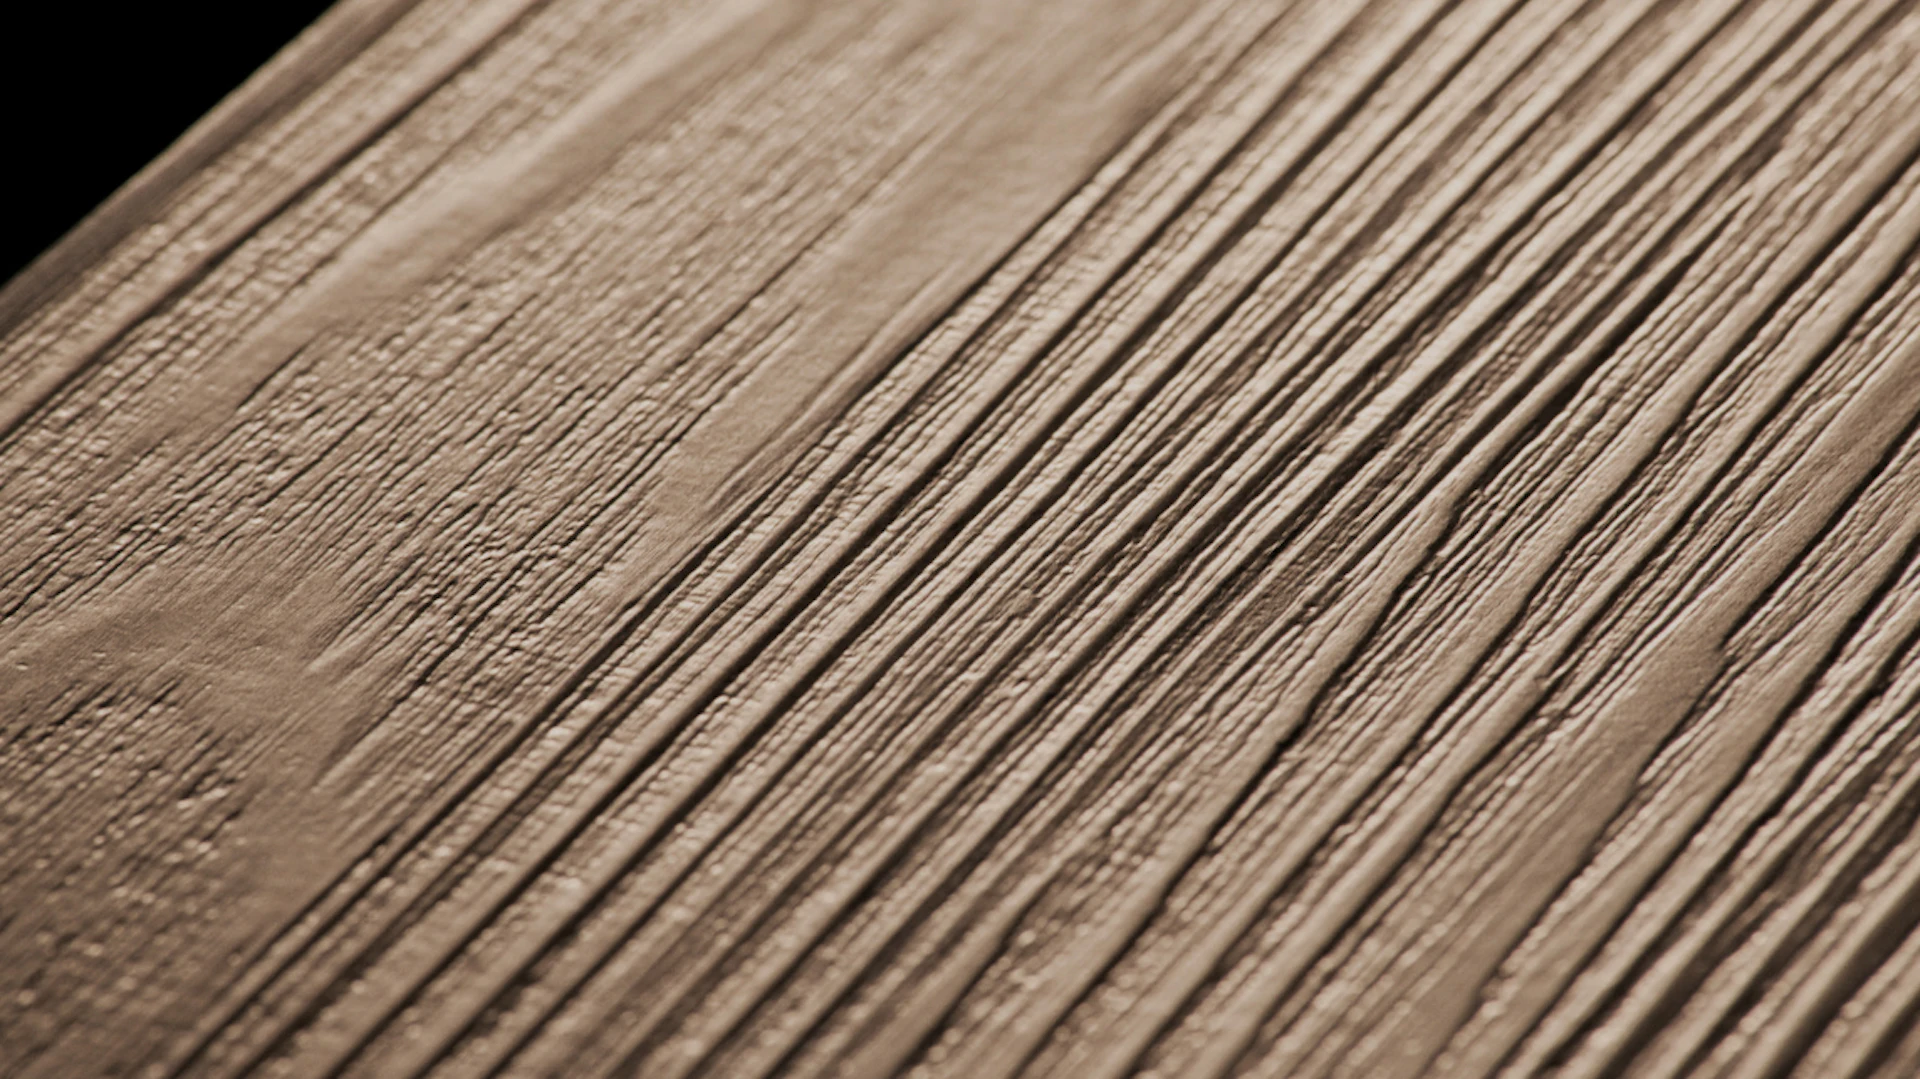 Project Floors adhesive Vinyl - floors@home20 PW3115 /20 (PW311520)